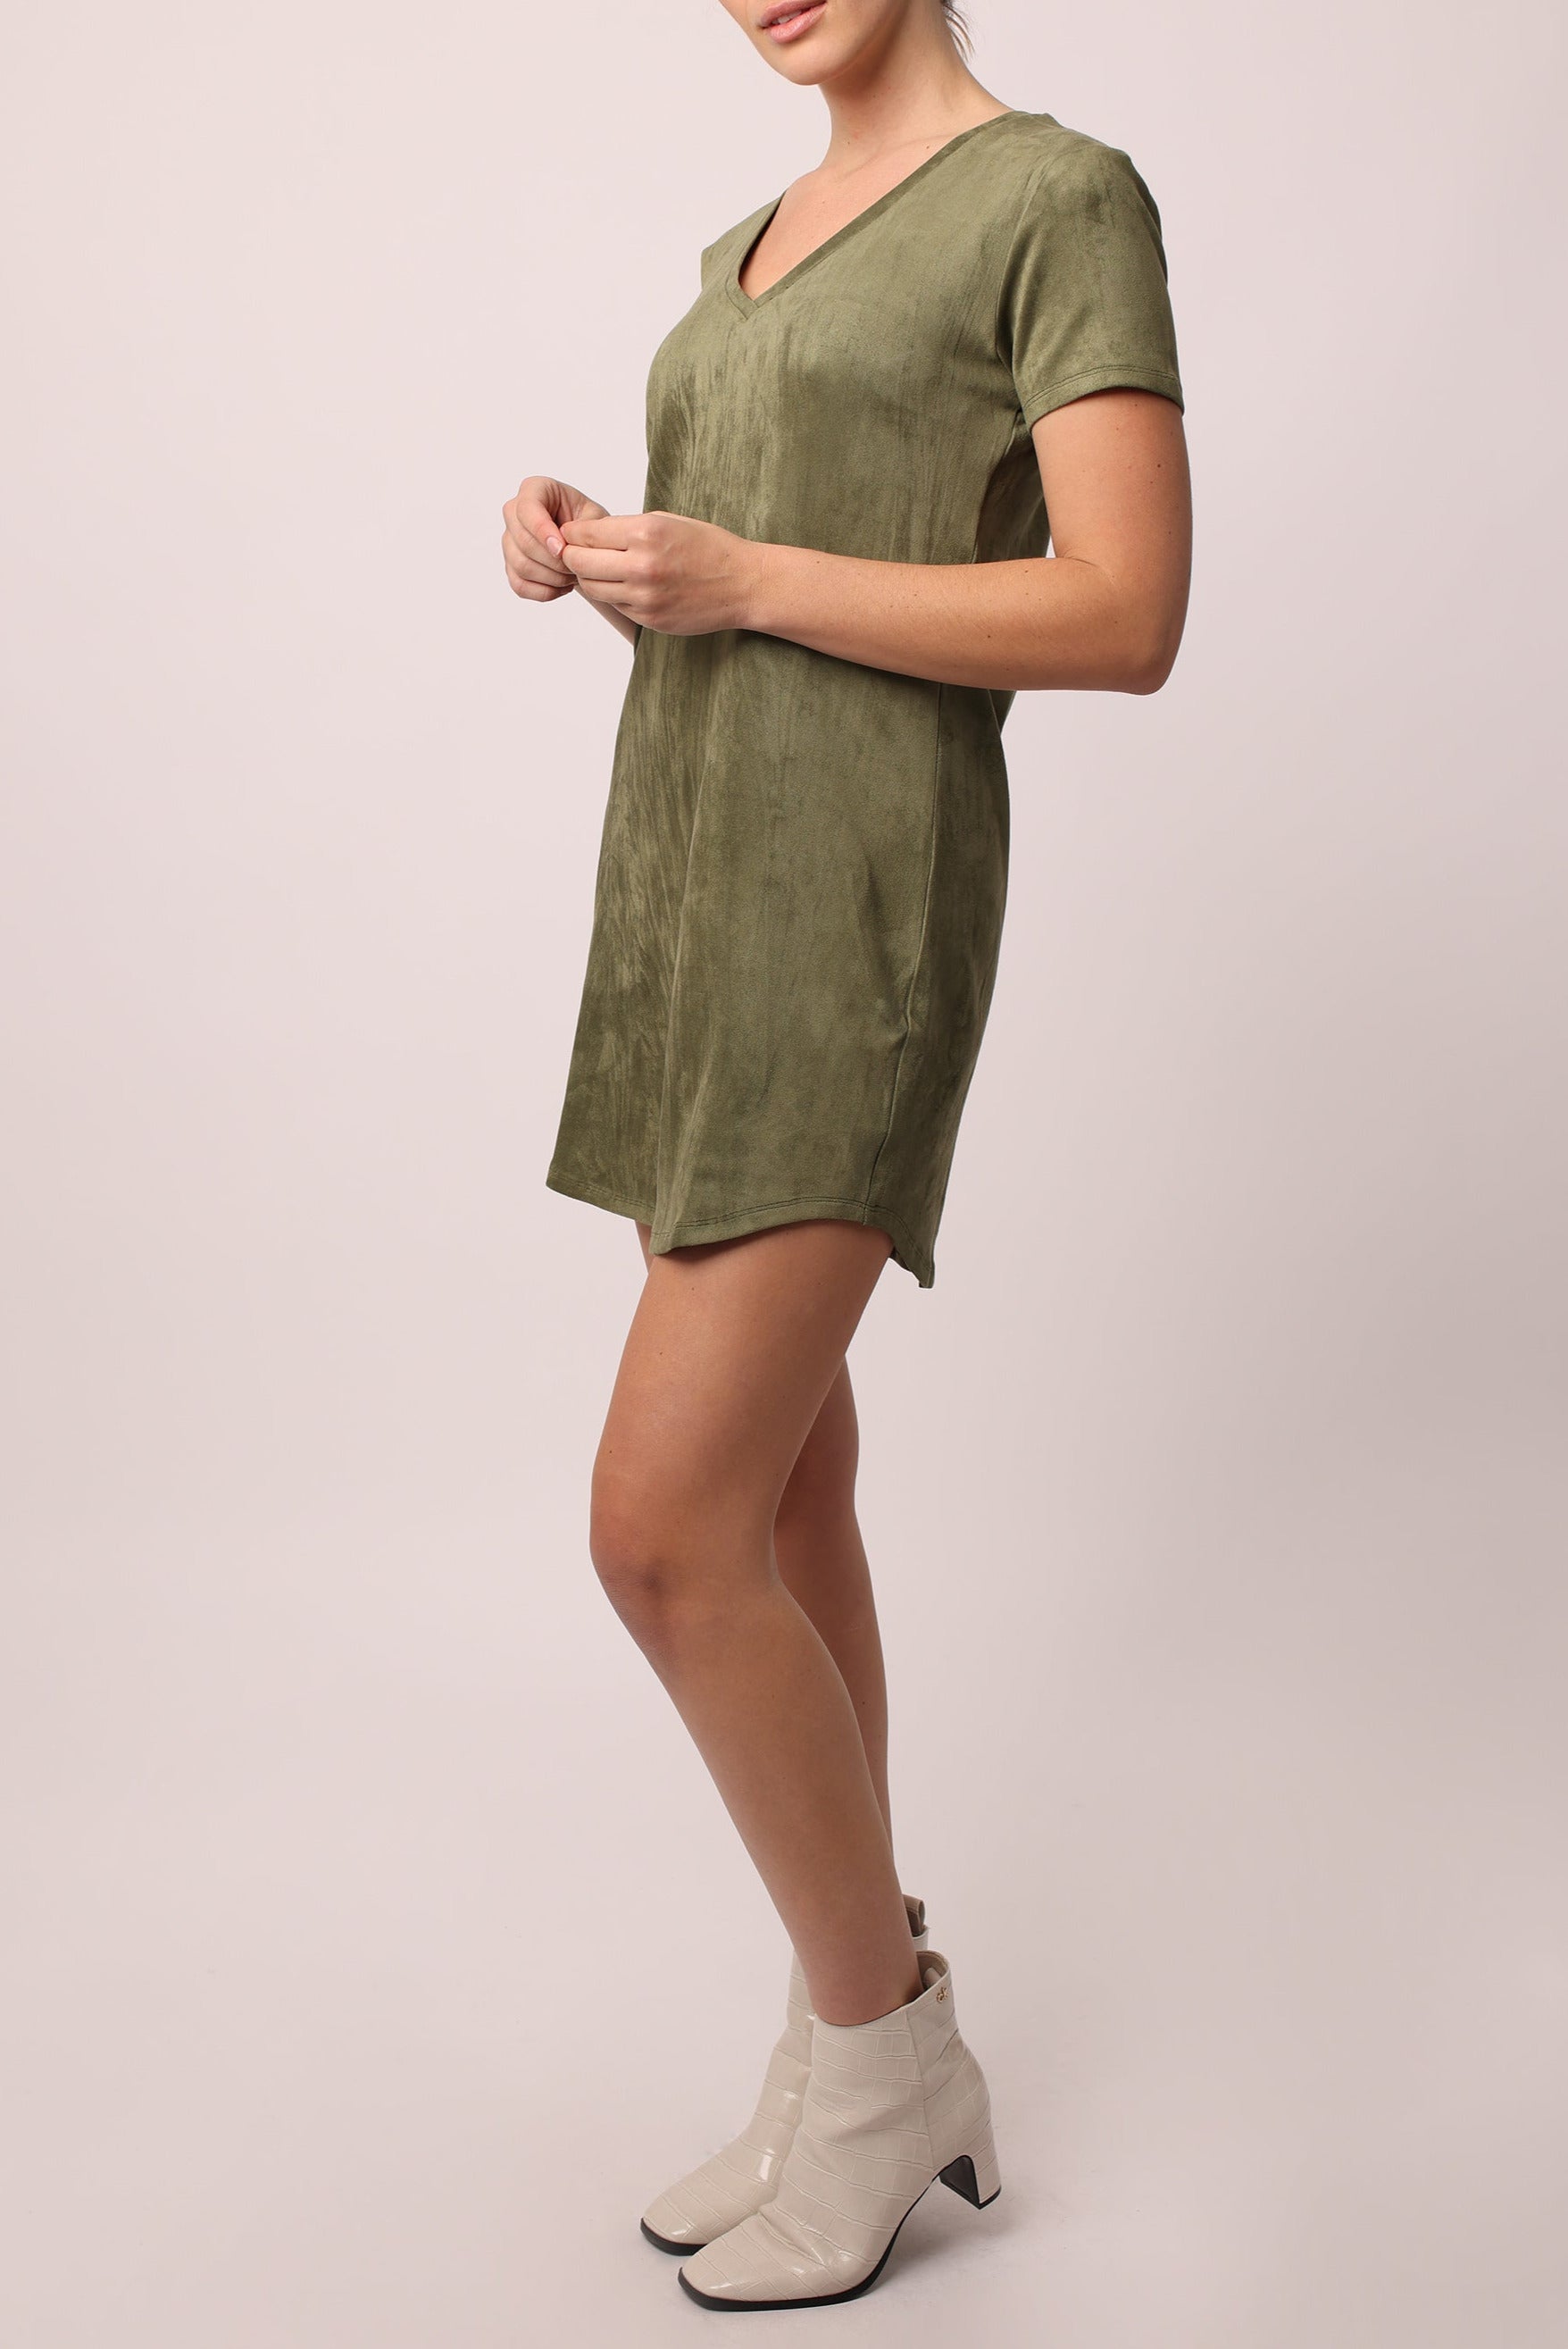 aria-vneck-side-pocket-dress-dried-sage